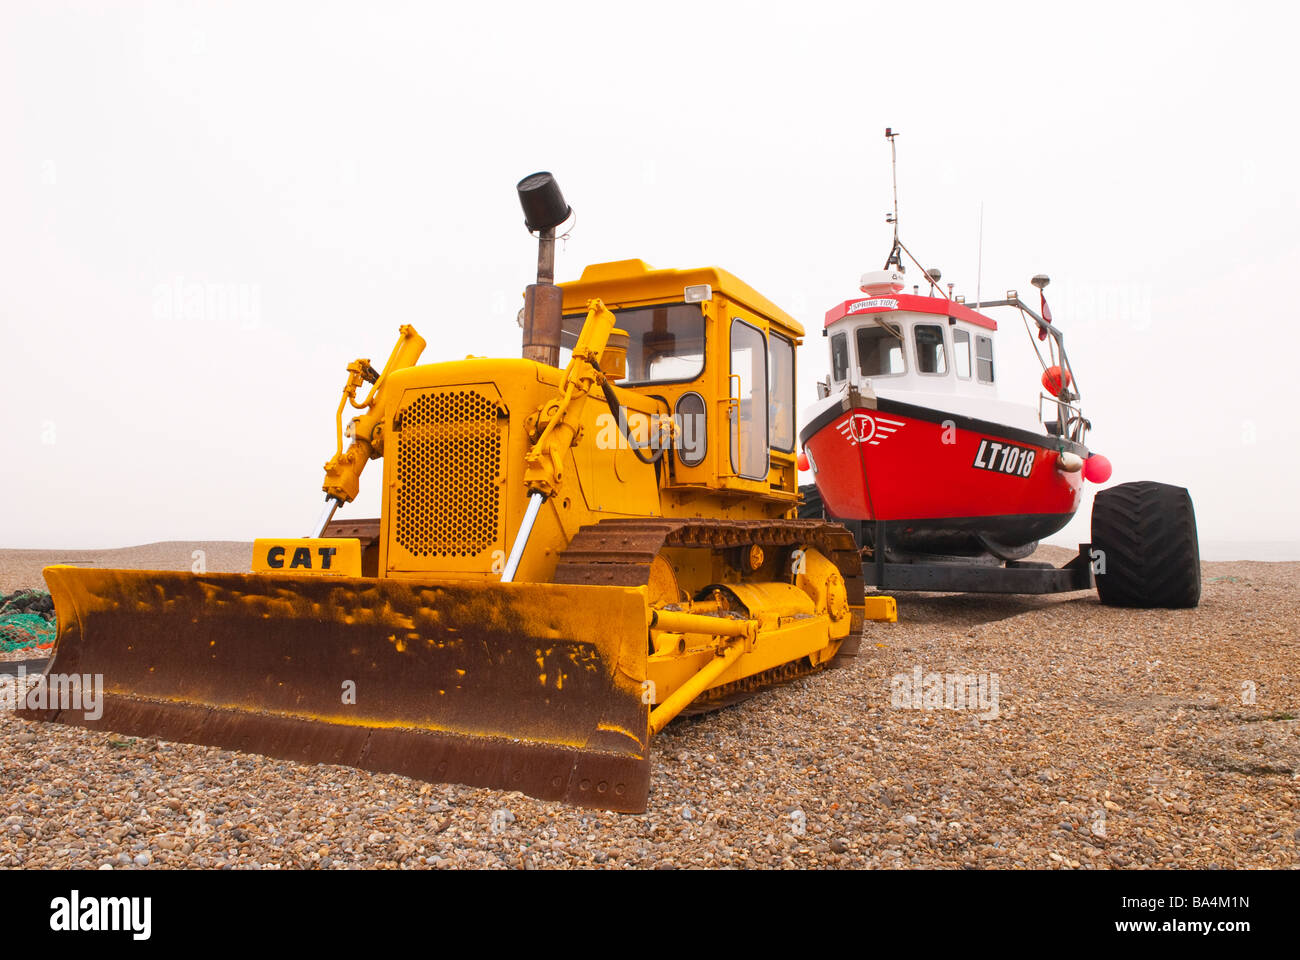 Un tracteur à chenilles Caterpillar bulldozer cat tirant un bateau de pêche sur la plage à Aldeburgh, Suffolk, UK Banque D'Images